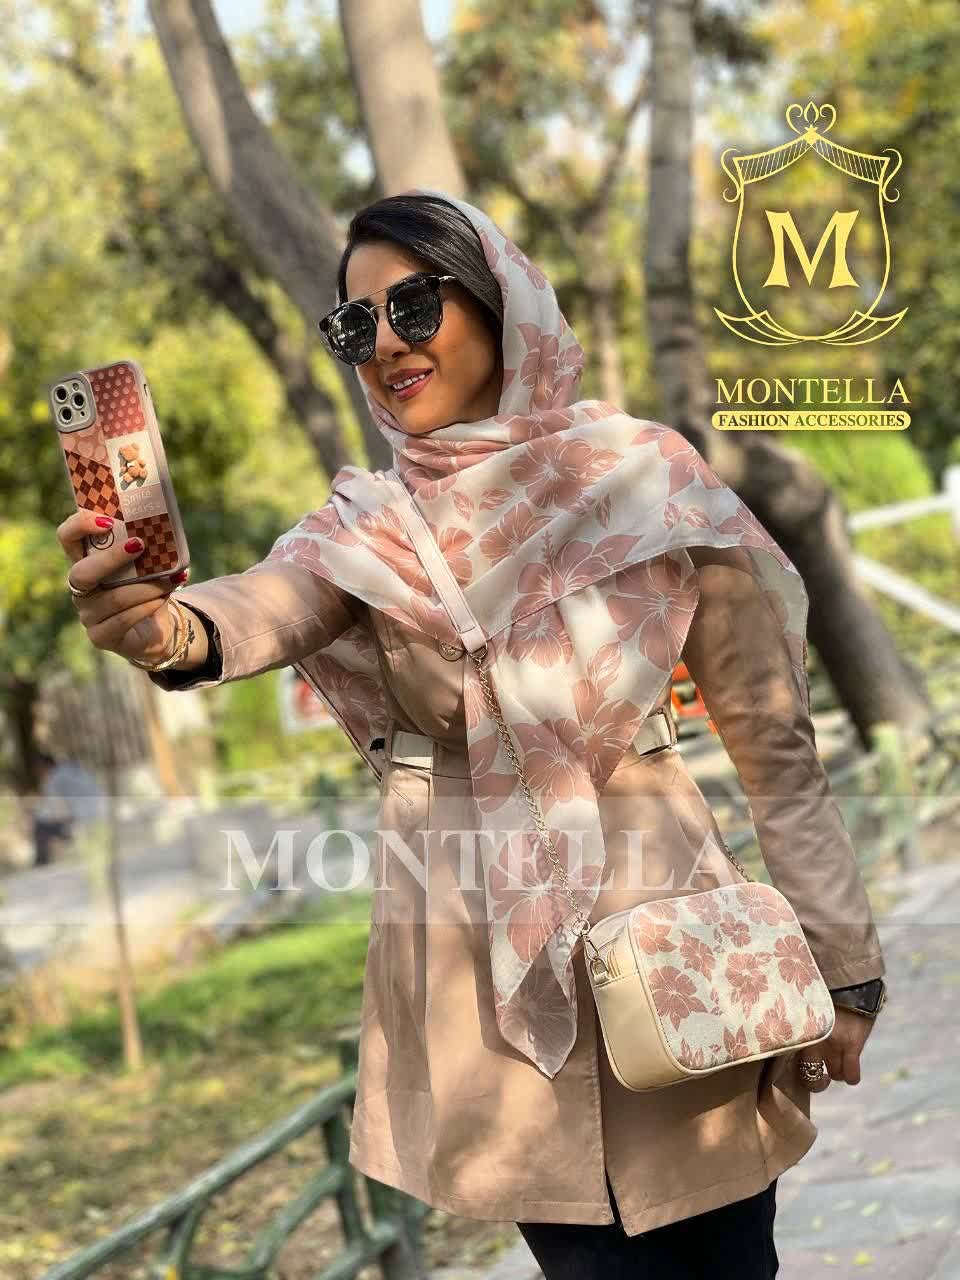 ست کیف و روسری زنانه طرح سانا رنگ کرم با کیف کوچک کیفیت عالی با ارسال رایگان کد mo421